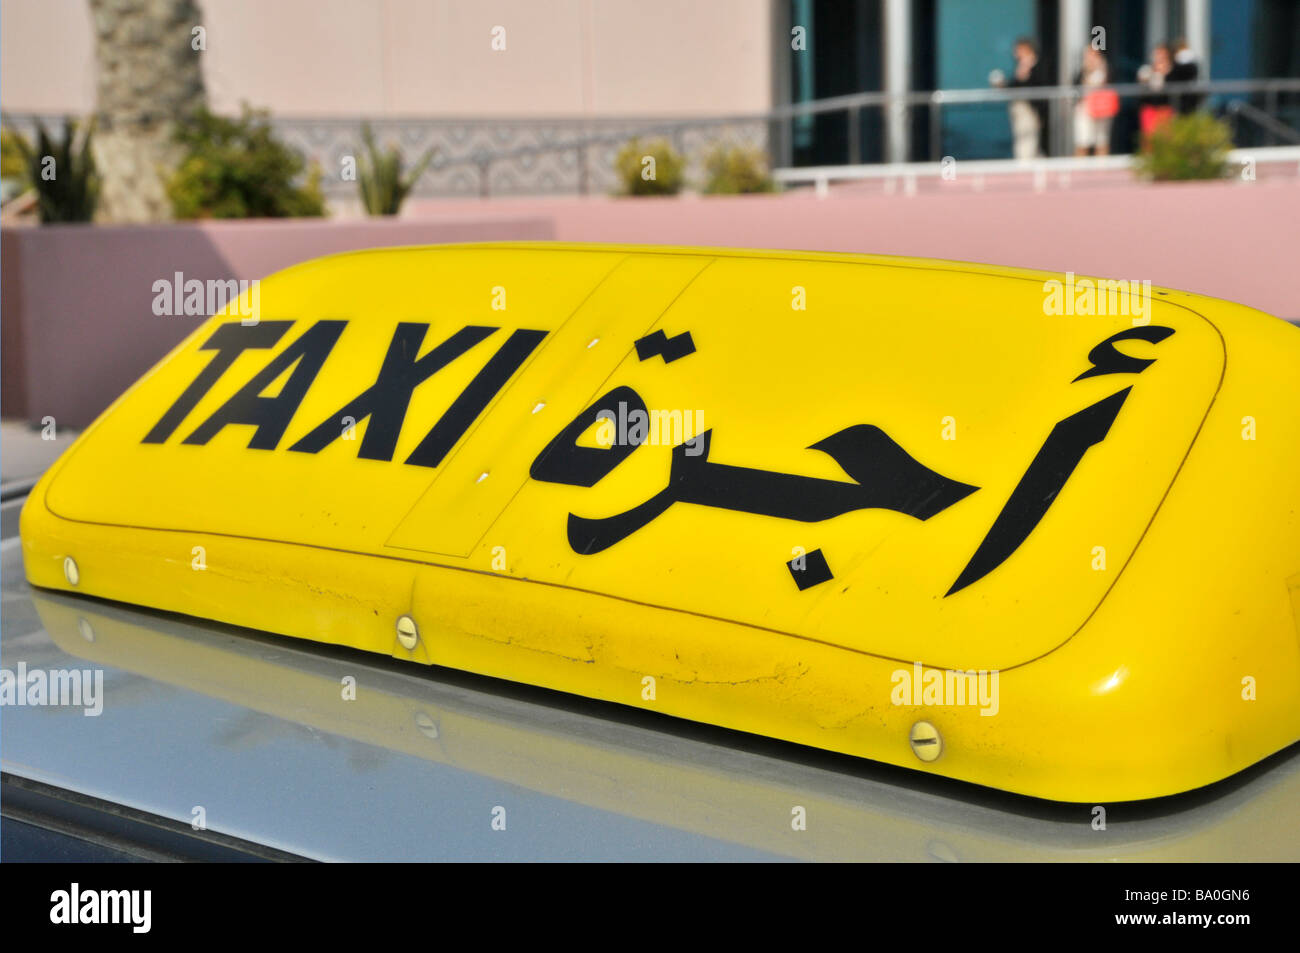 Abu Dhabi primo piano del taxi bilingue giallo montato sul tetto Segnale taxi Emirati Arabi Uniti Emirati Arabi Uniti Medio Oriente Asia Foto Stock